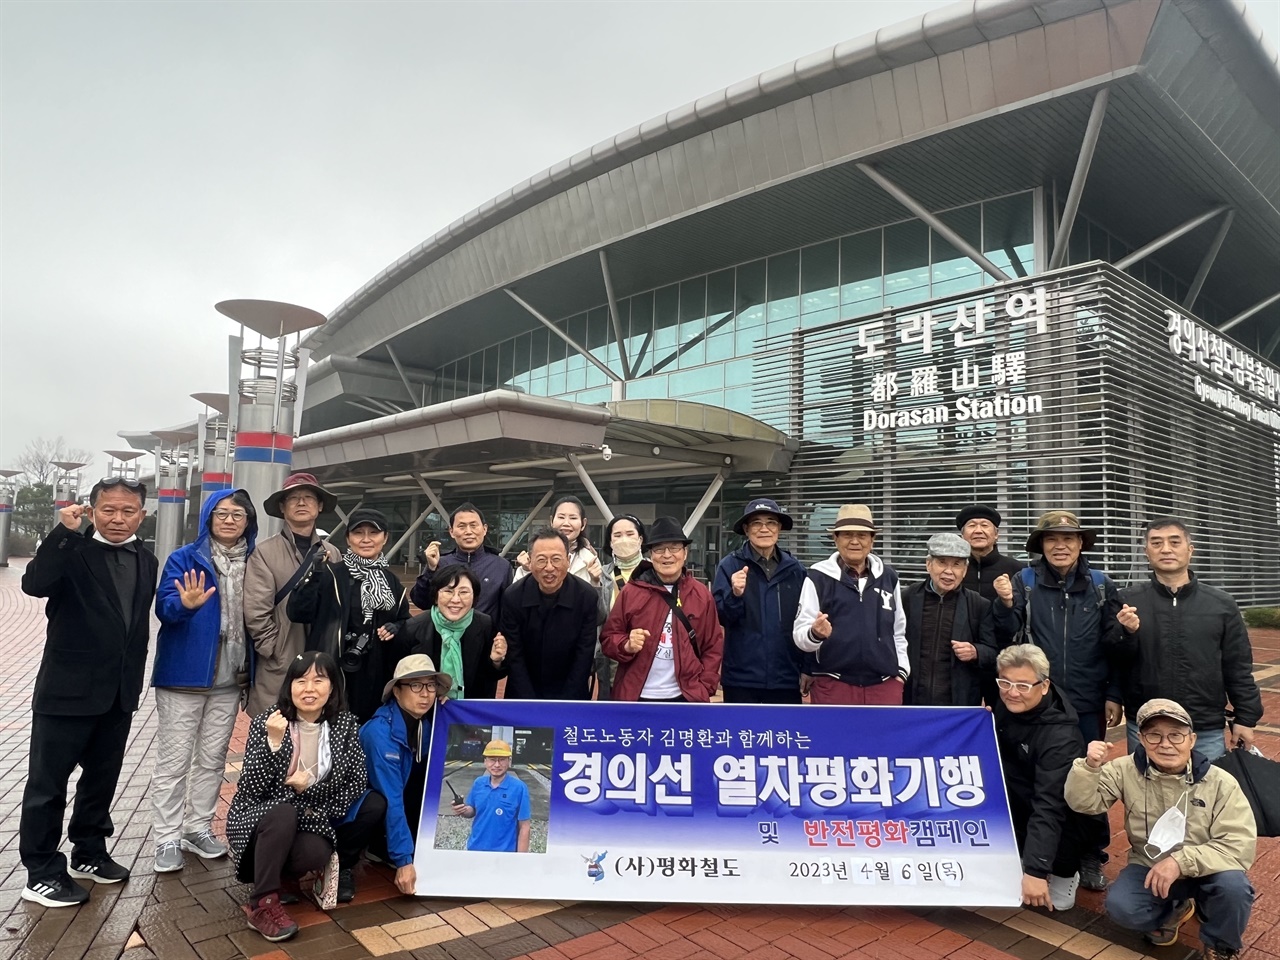 경의선 열차평화기행 참가자들이 도라산역 앞에서 평화~철도를 외치며 기념사진을 찍고 있다. 앞줄 왼쪽에서 네 번째가 김명환 집행위원장이다.